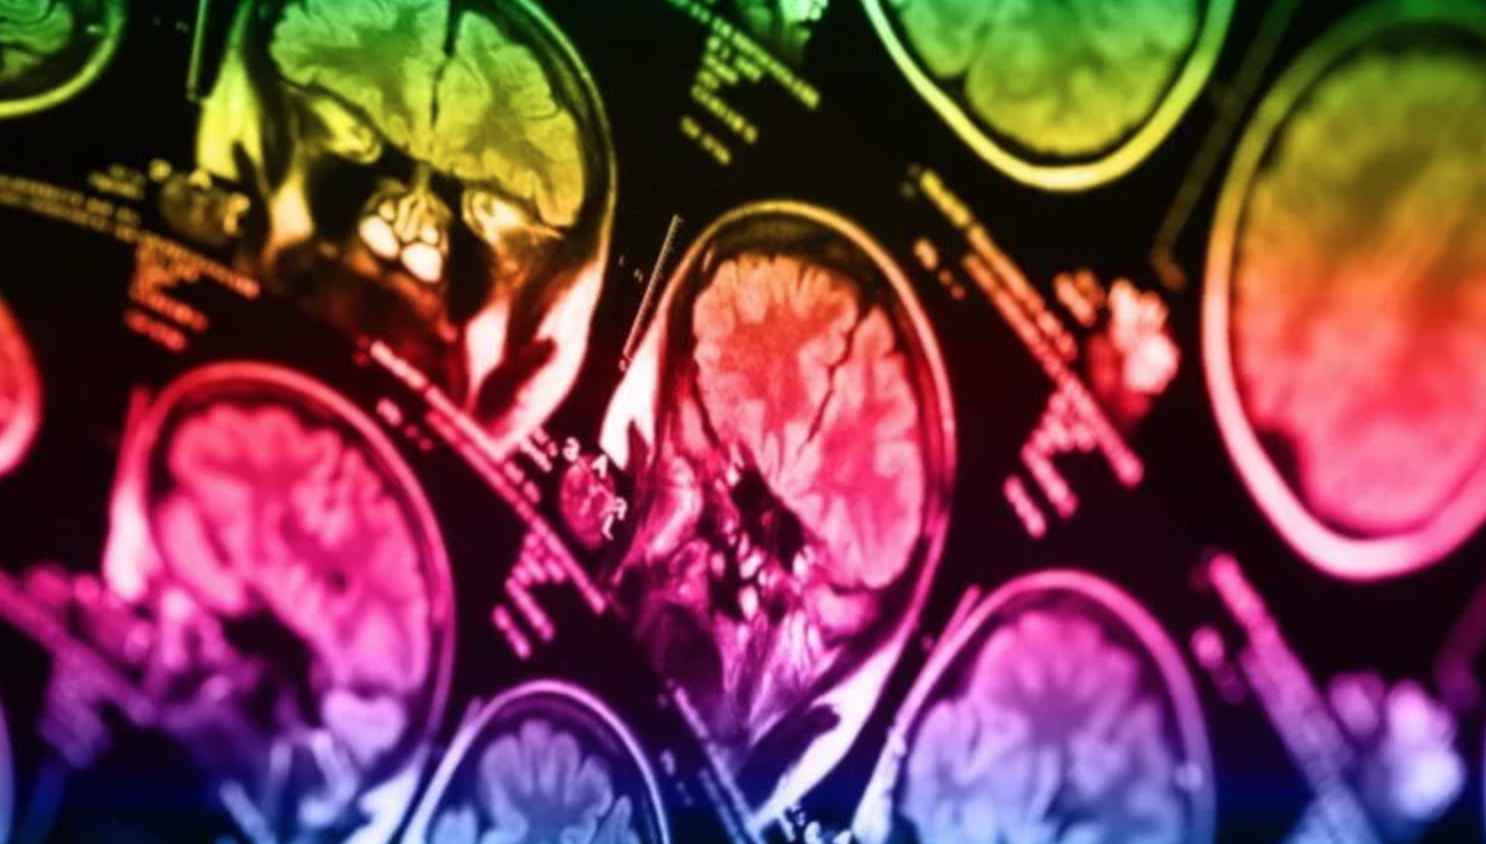 Склонность к суициду можно выявить при помощи сканирования мозга